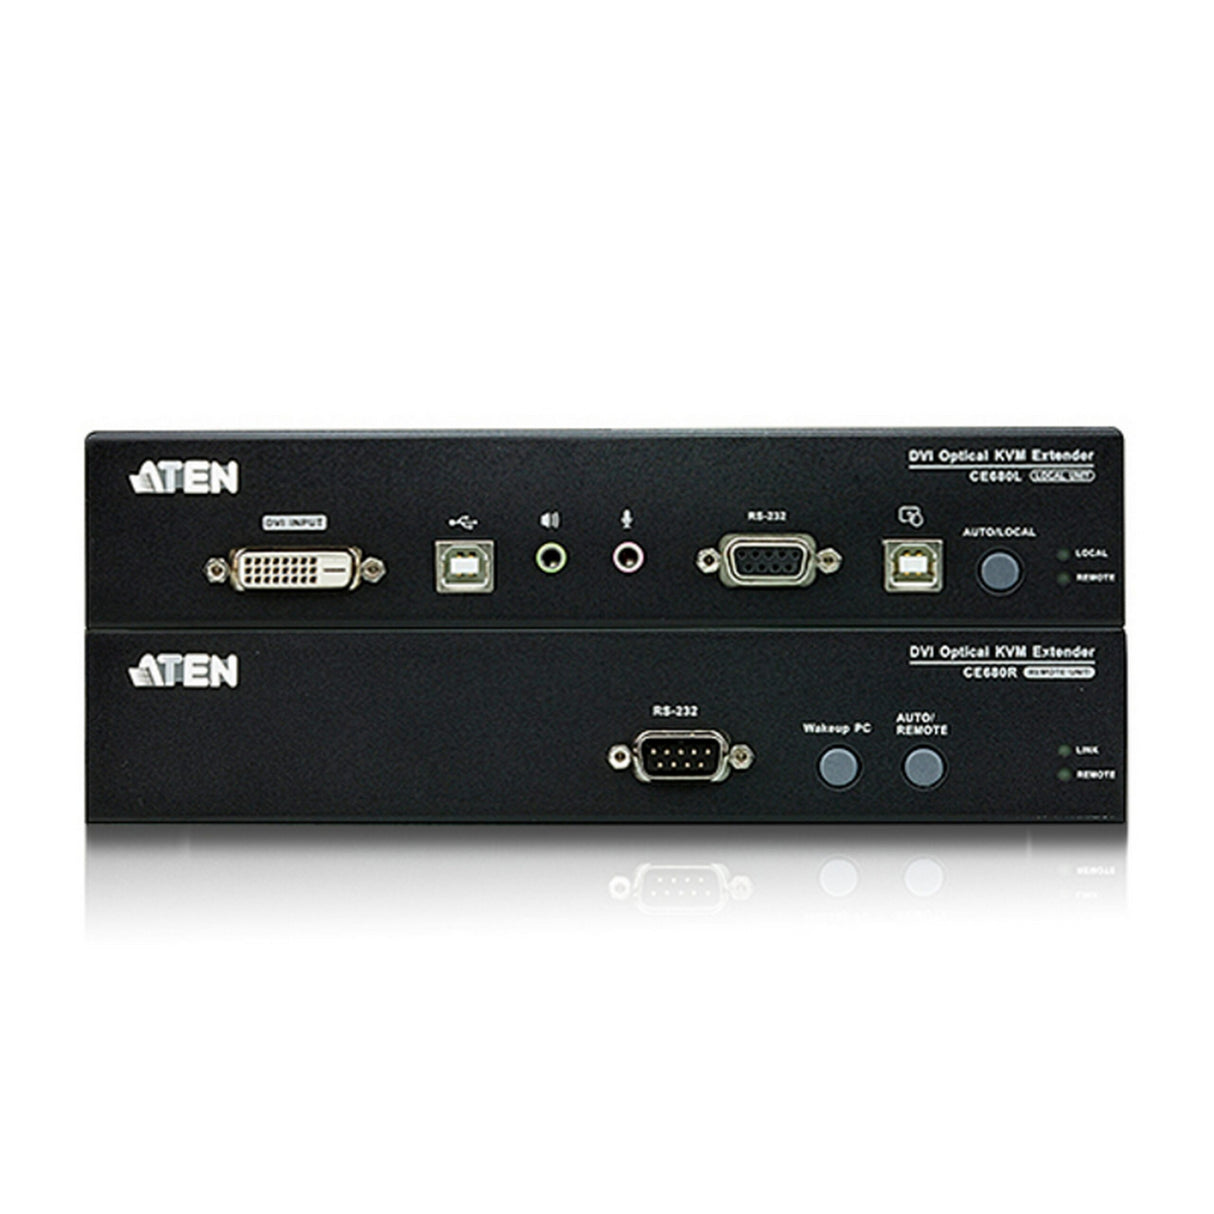 ATEN CE680 USB DVI Optical KVM Extender